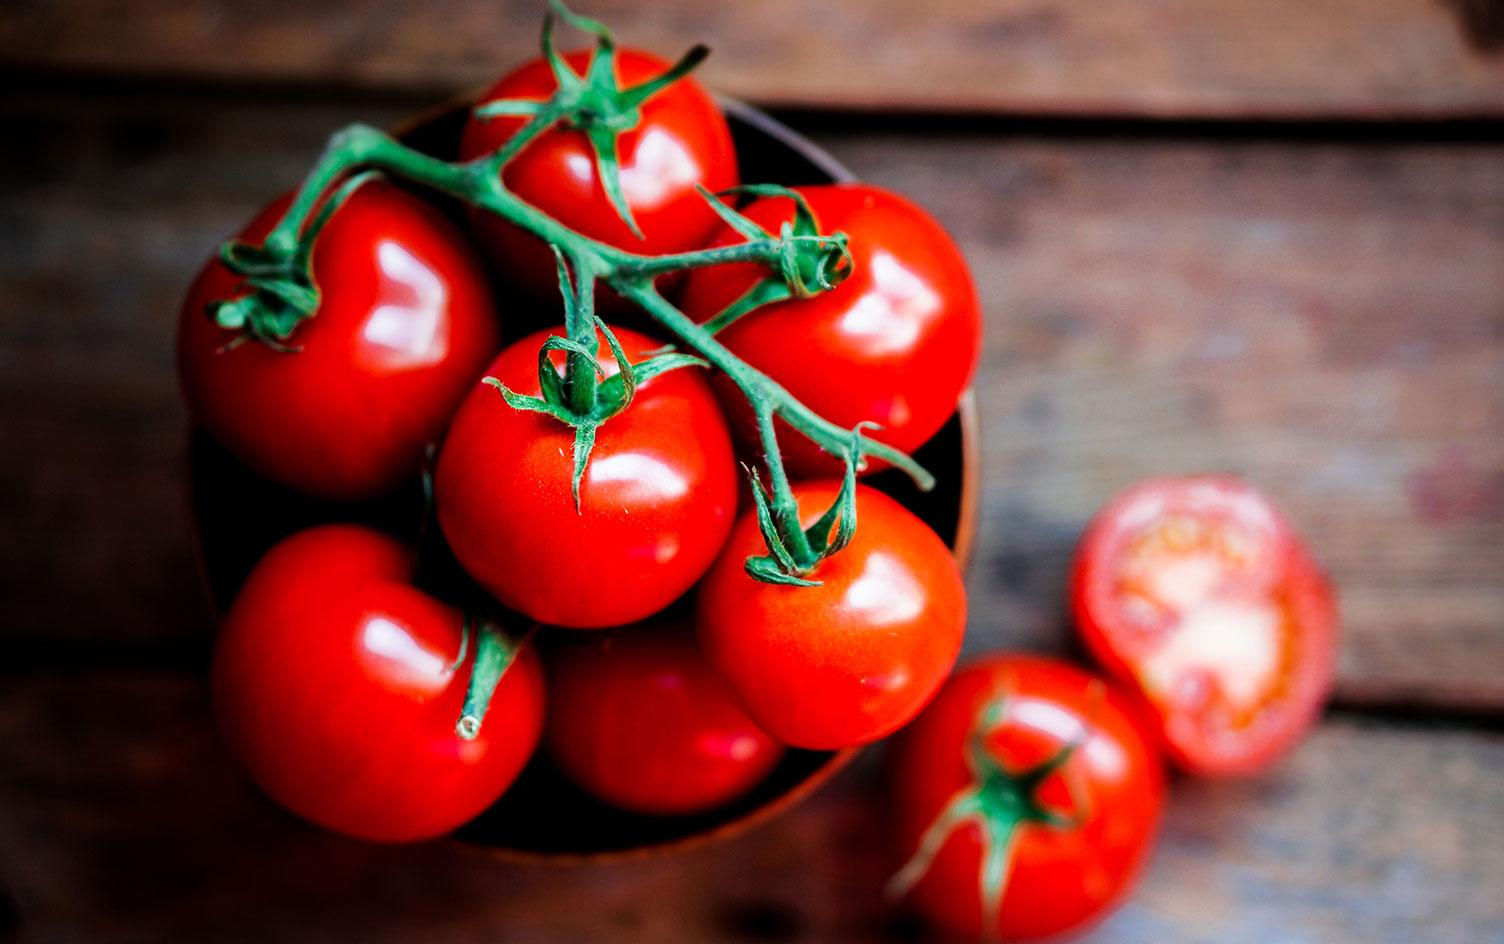 Cà chua không chỉ là một thực phẩm bổ dưỡng chứa nhiều vitamin thiết yếu cho cơ thể, mà còn có thể trị được mụn cám hiệu quả.